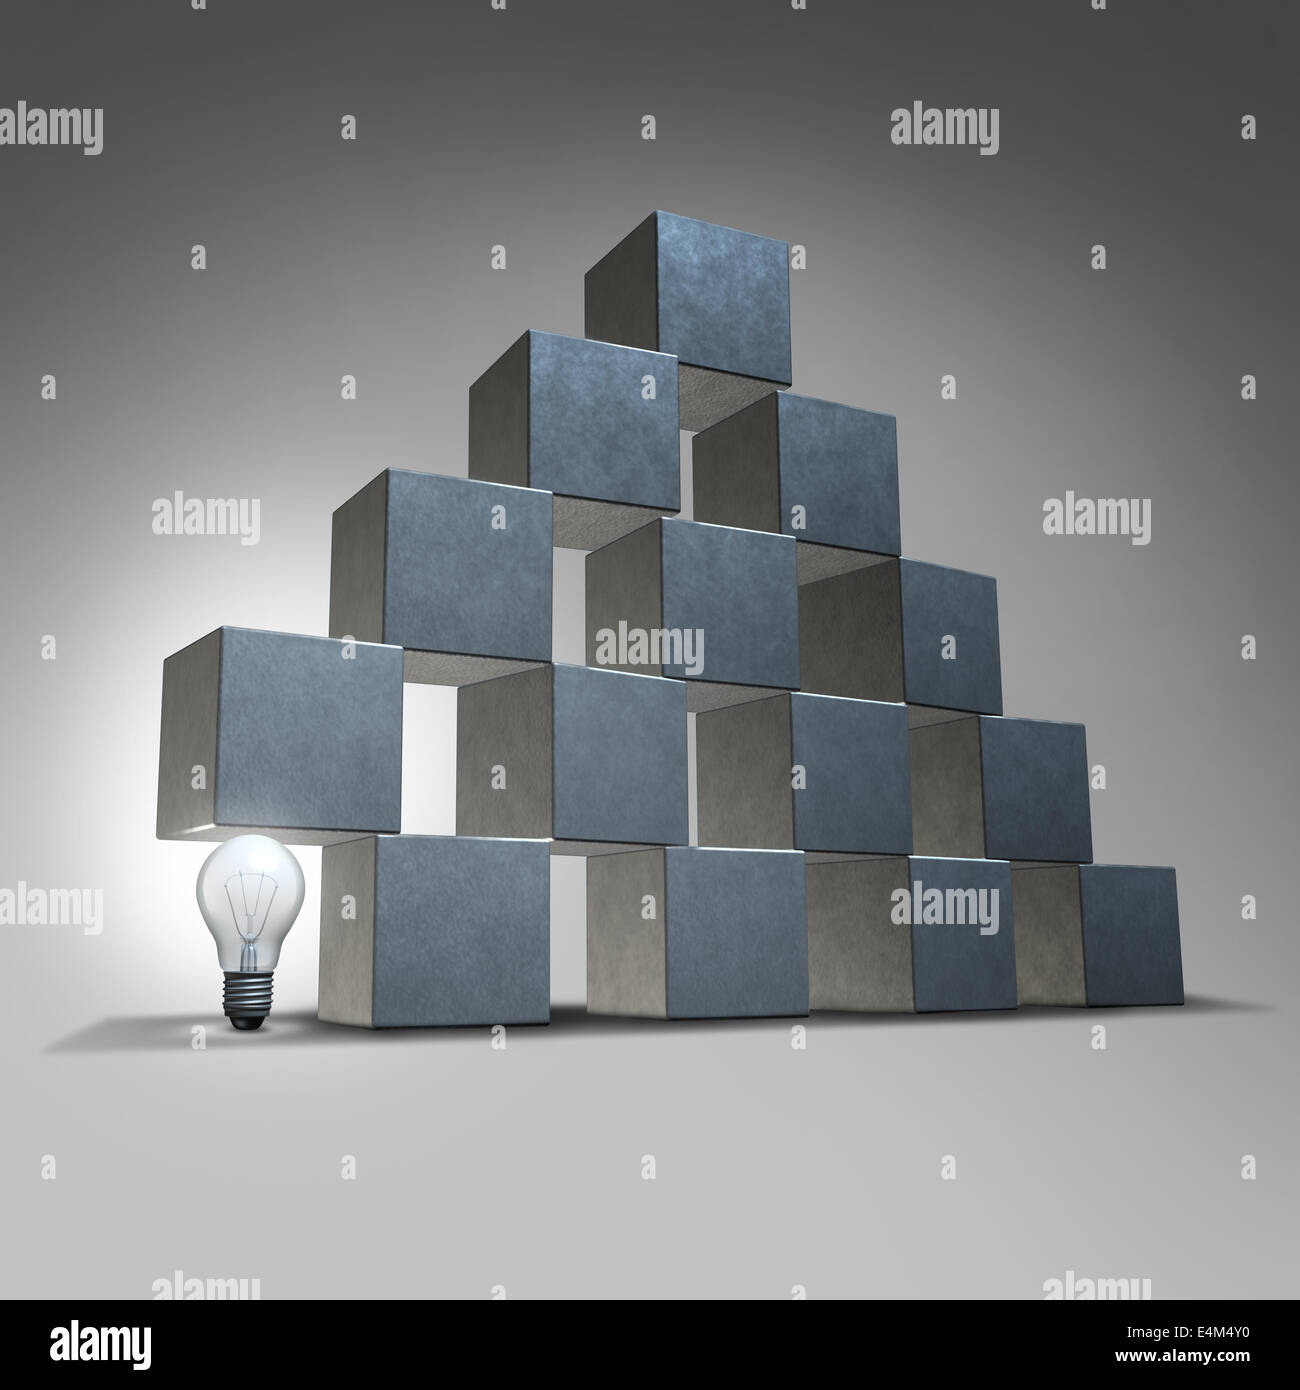 Créative et business marketing concept de partenariat en tant que groupe de cubes en trois dimensions d'être appuyé par un illumina Banque D'Images